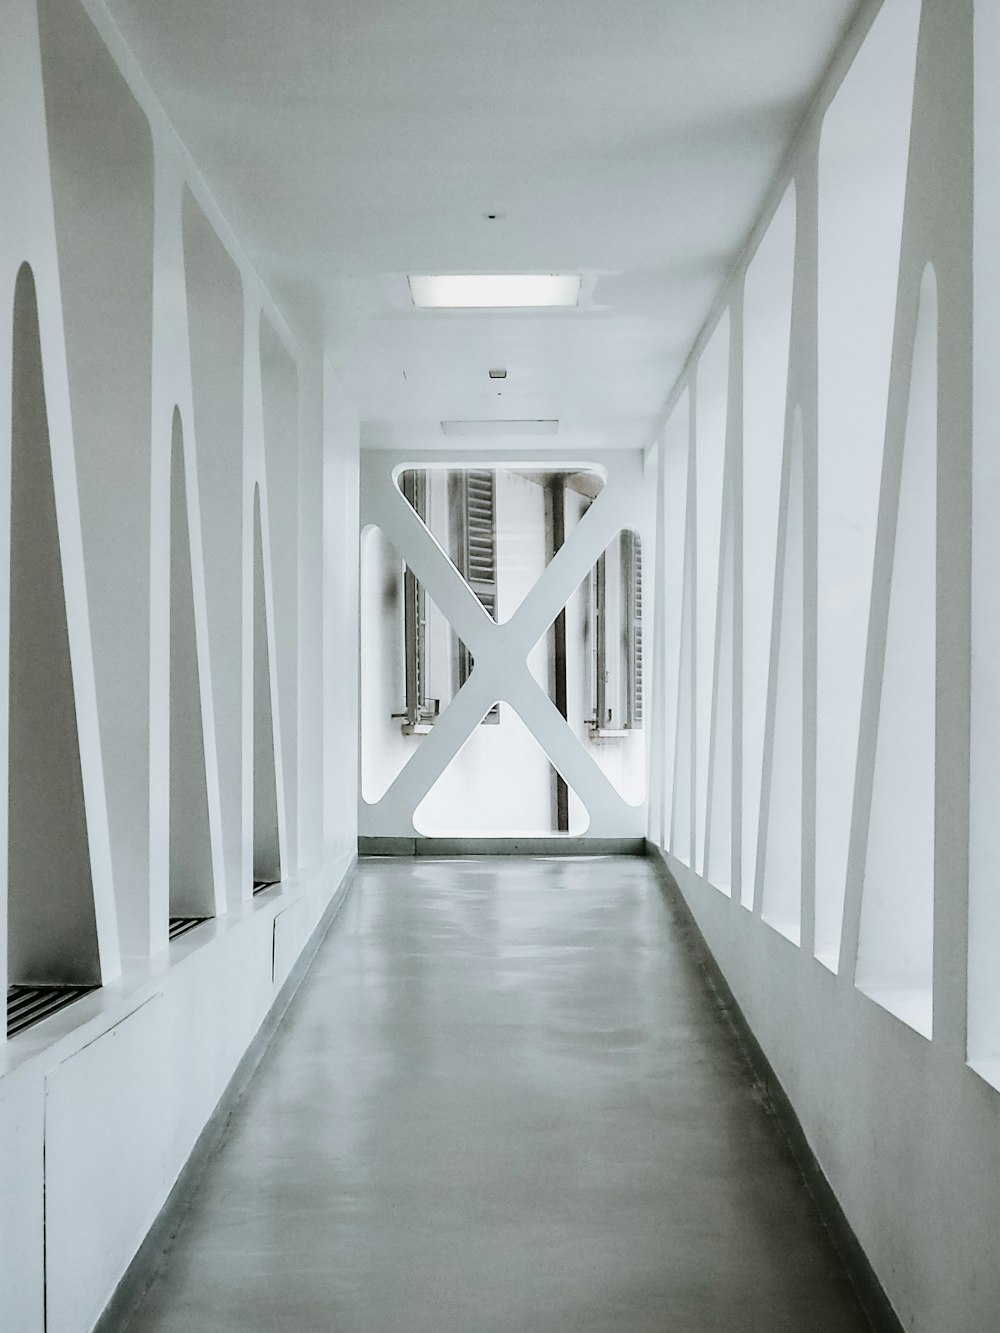 corredor do edifício pintado de branco